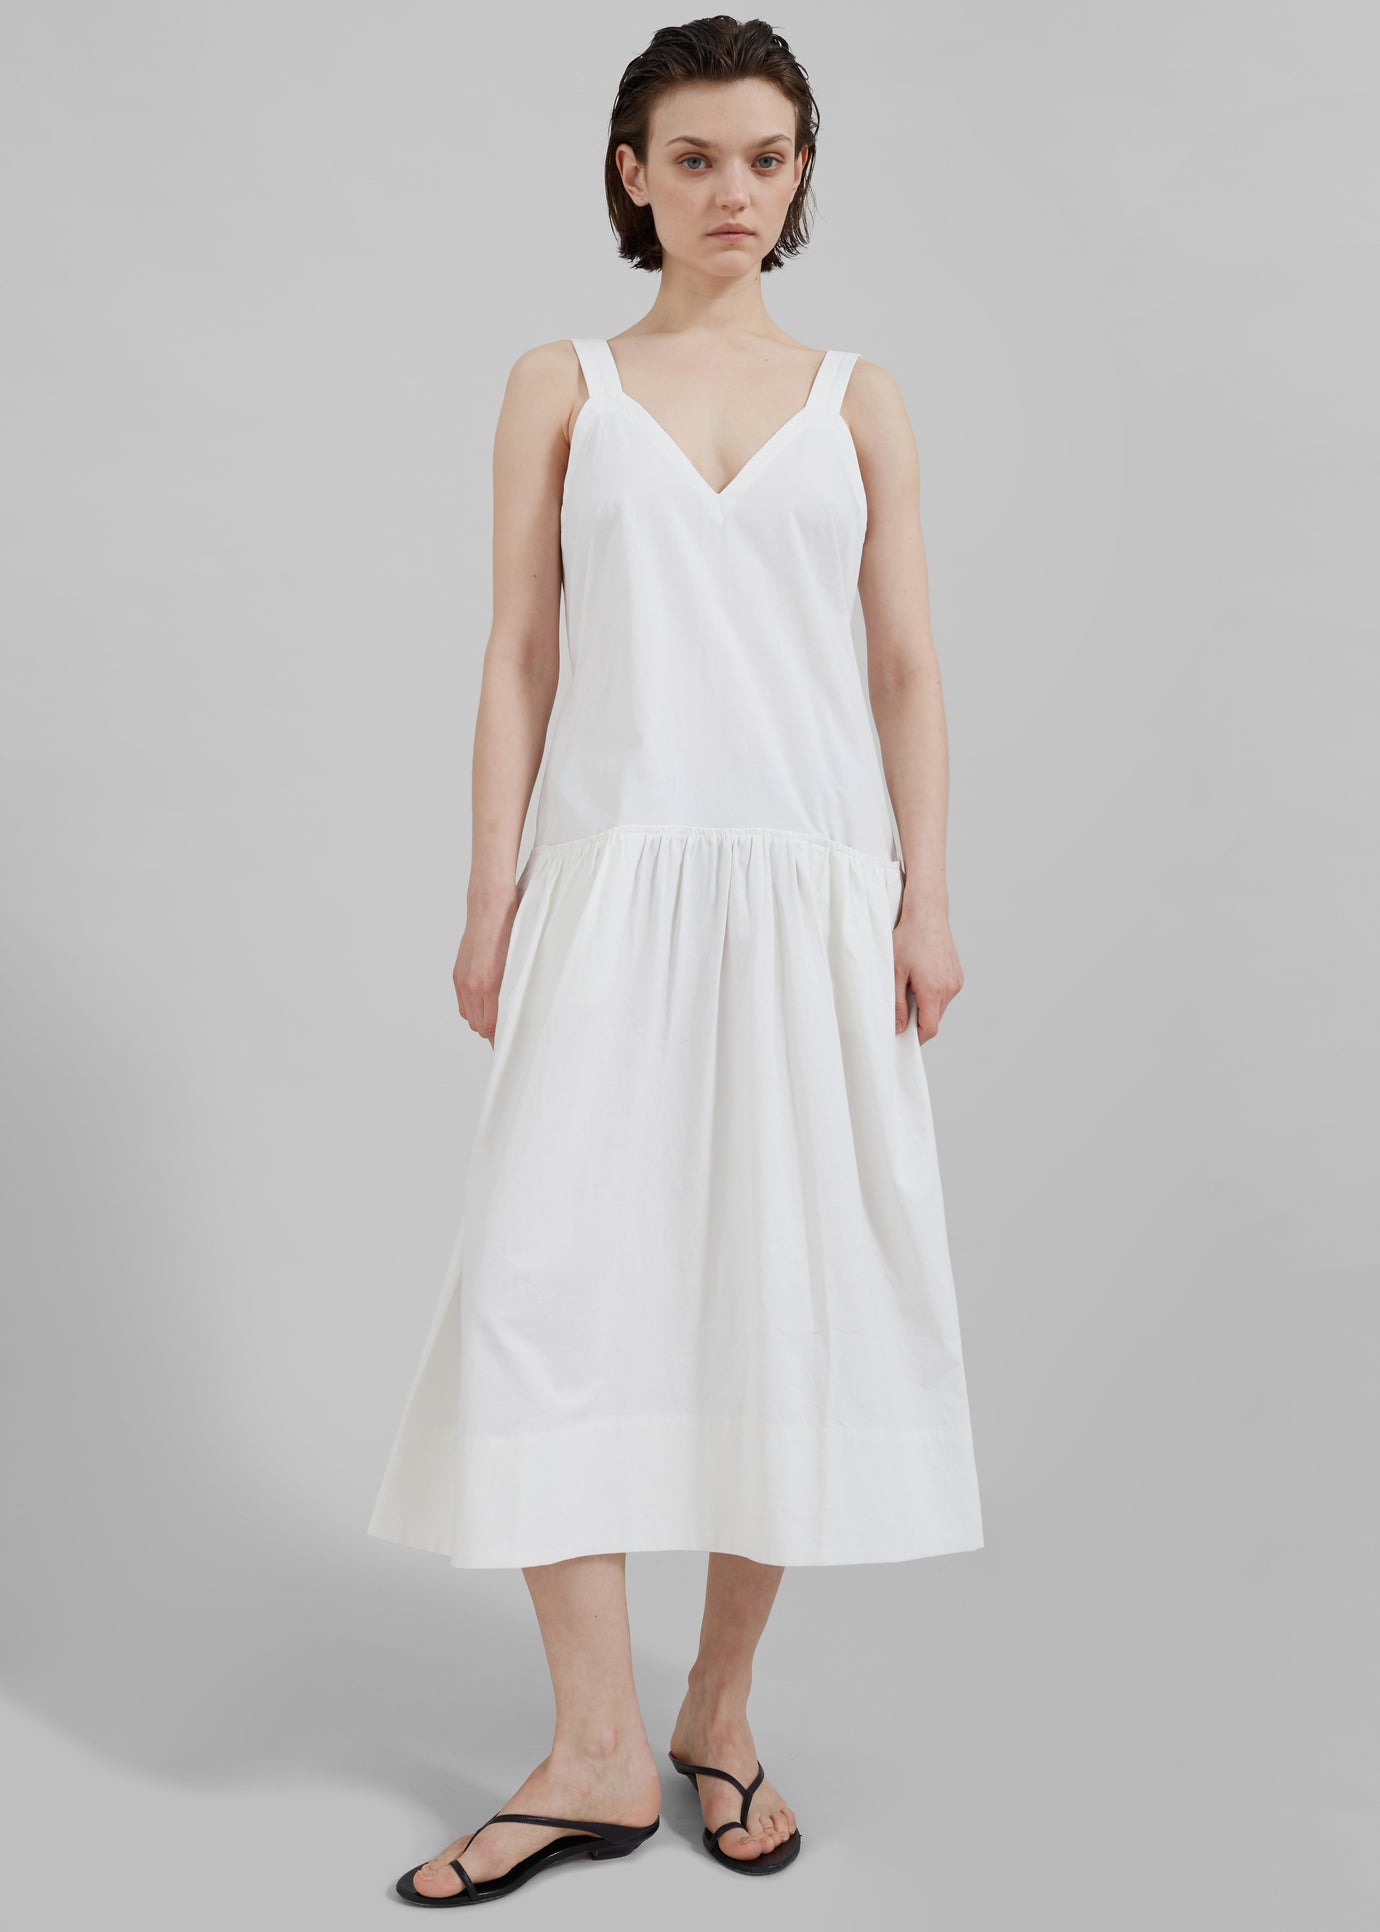 Proenza Schouler White Label Sasha Dress - Off White - 1